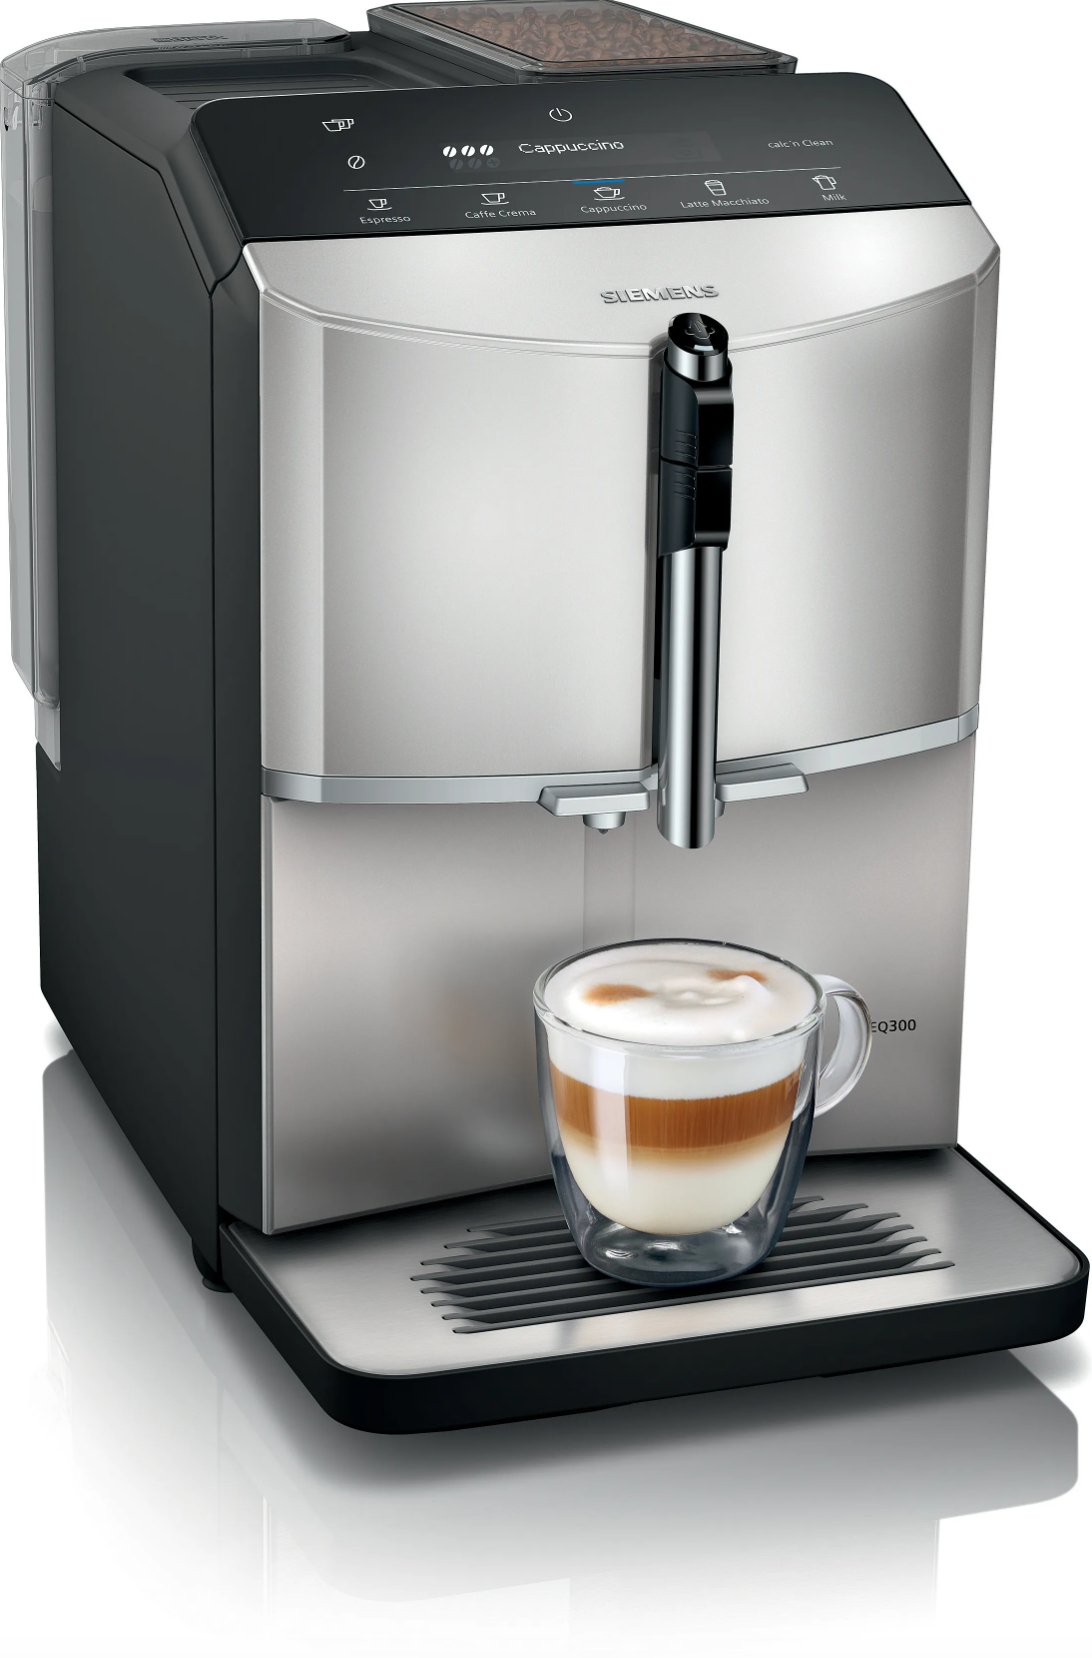 Siemens EQ.300 TF303E07 coffee maker